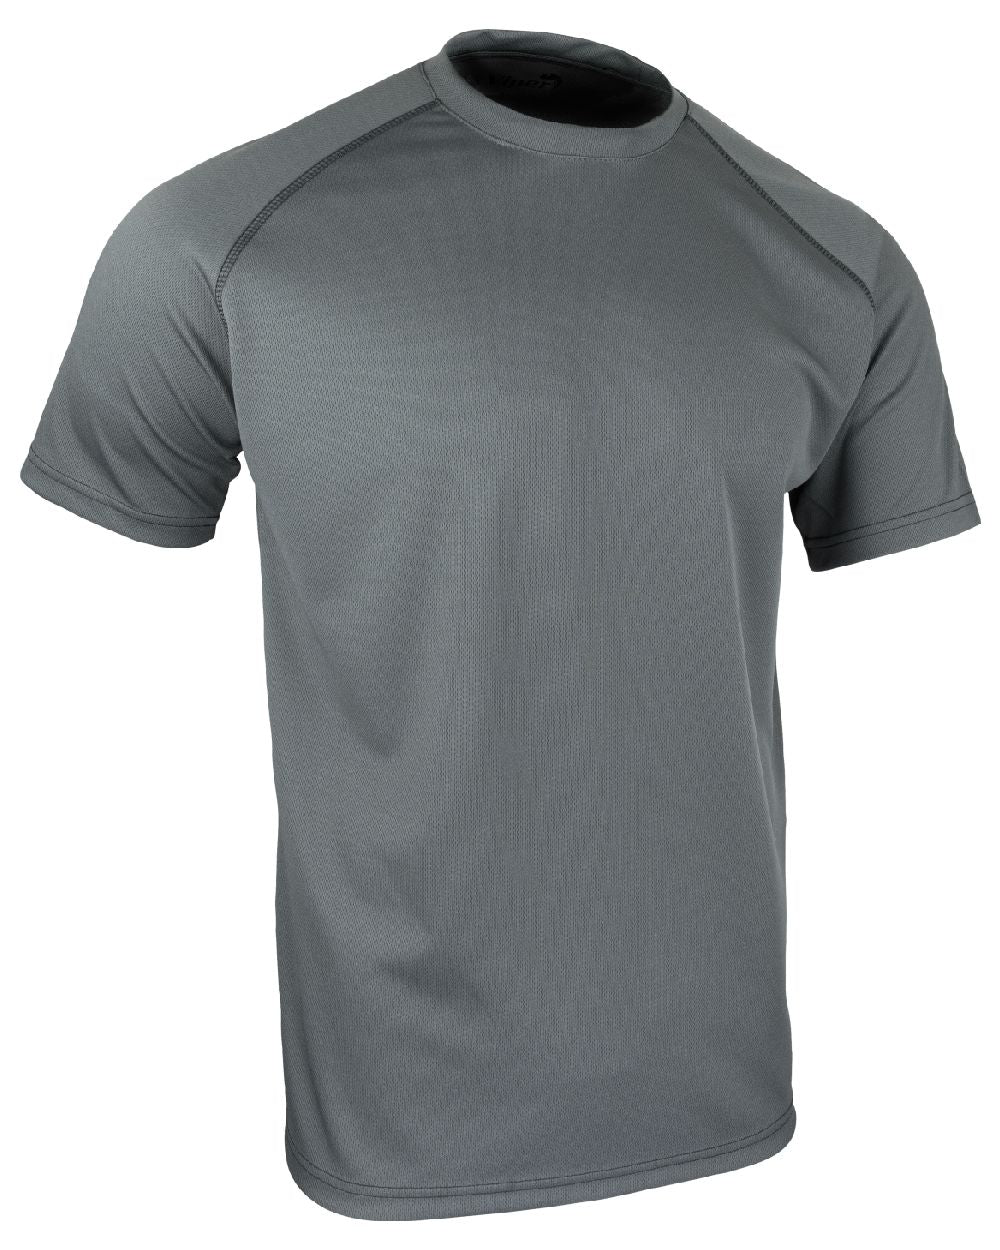 Viper Mesh-Tech T-Shirt in Titanium 